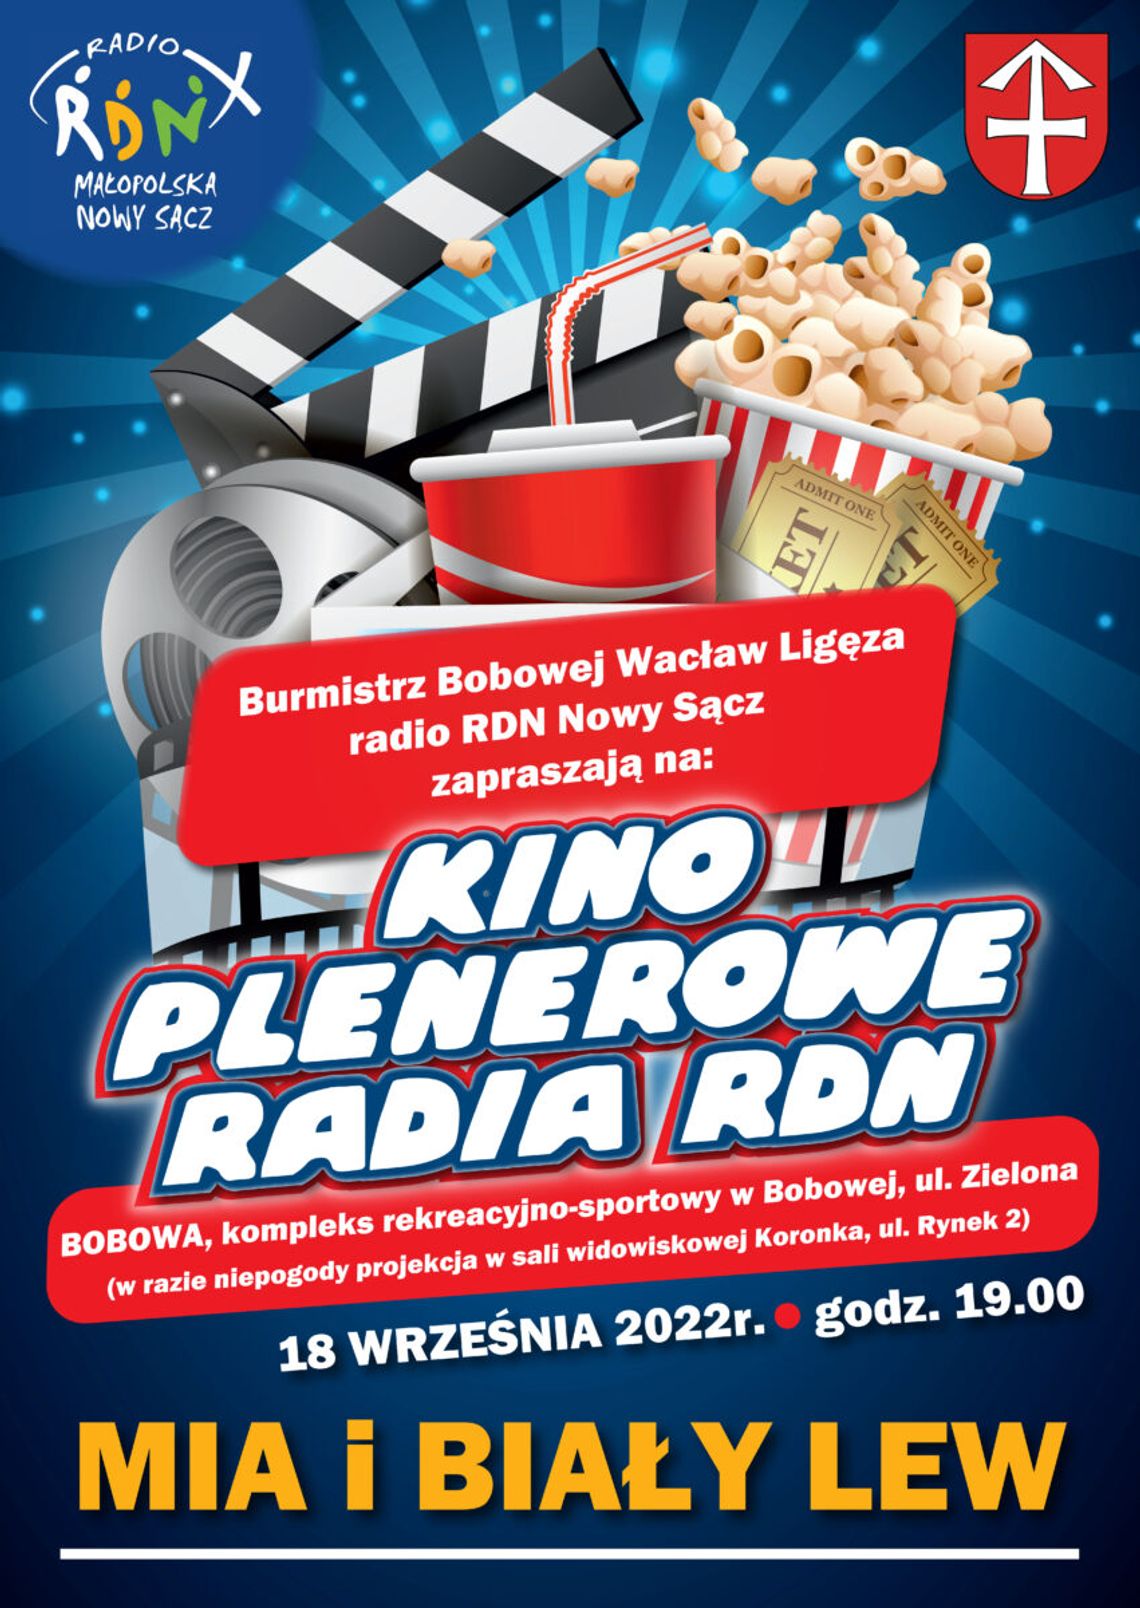 Kino plenerowe radia RDN – Bobowa | zapowiedzi imprez - halogorlice.info